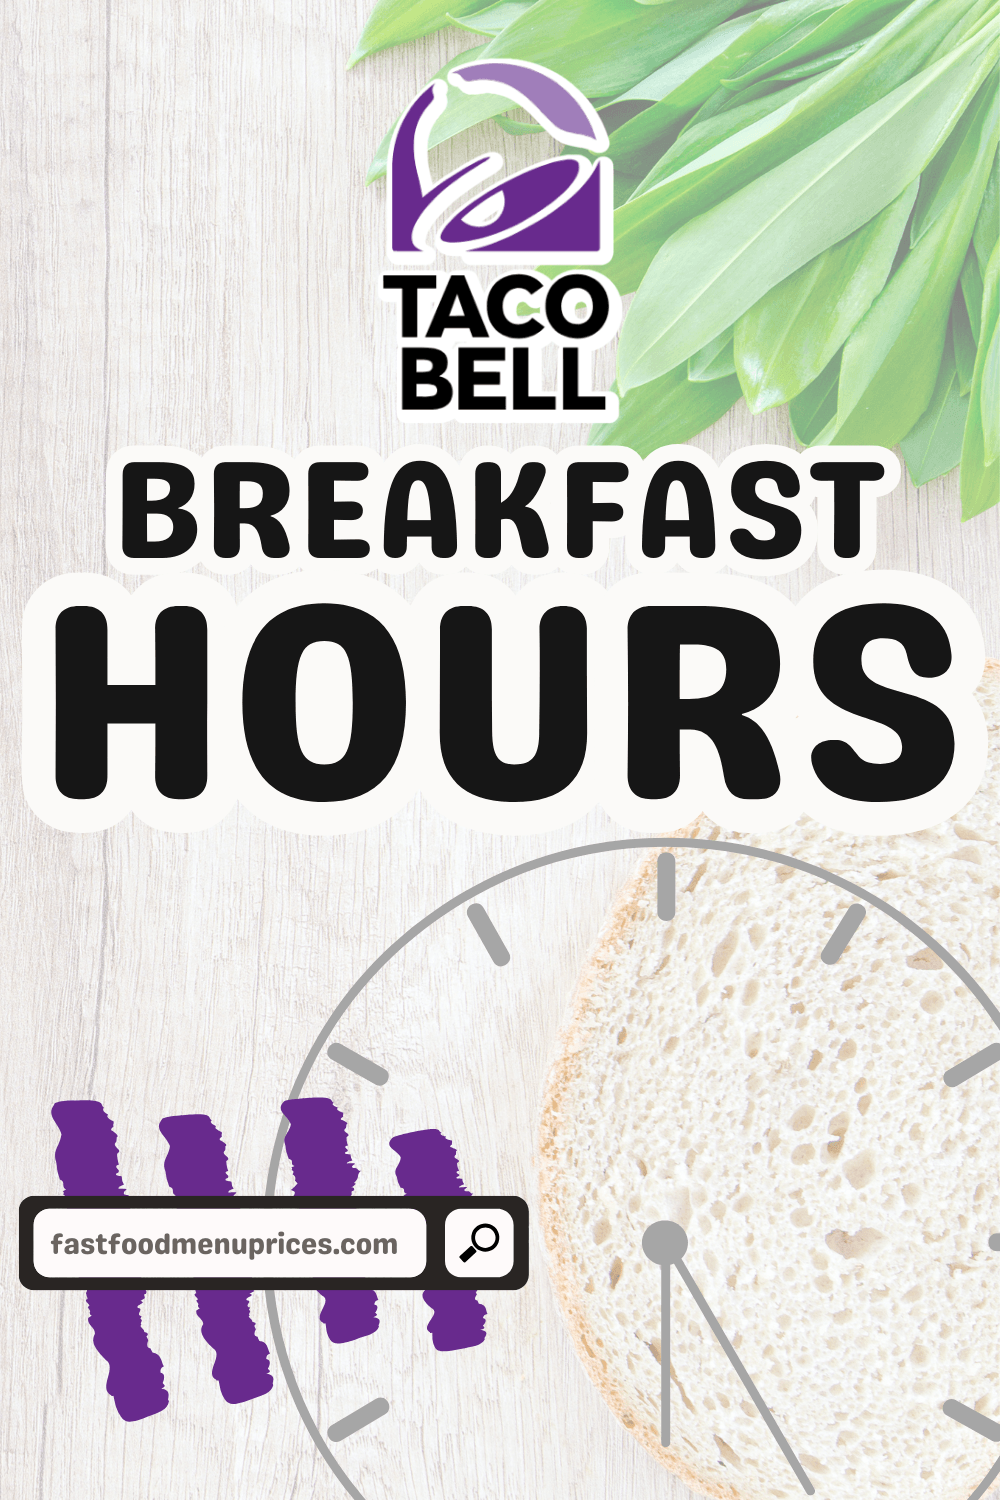 Taco Bell breakfast hours.